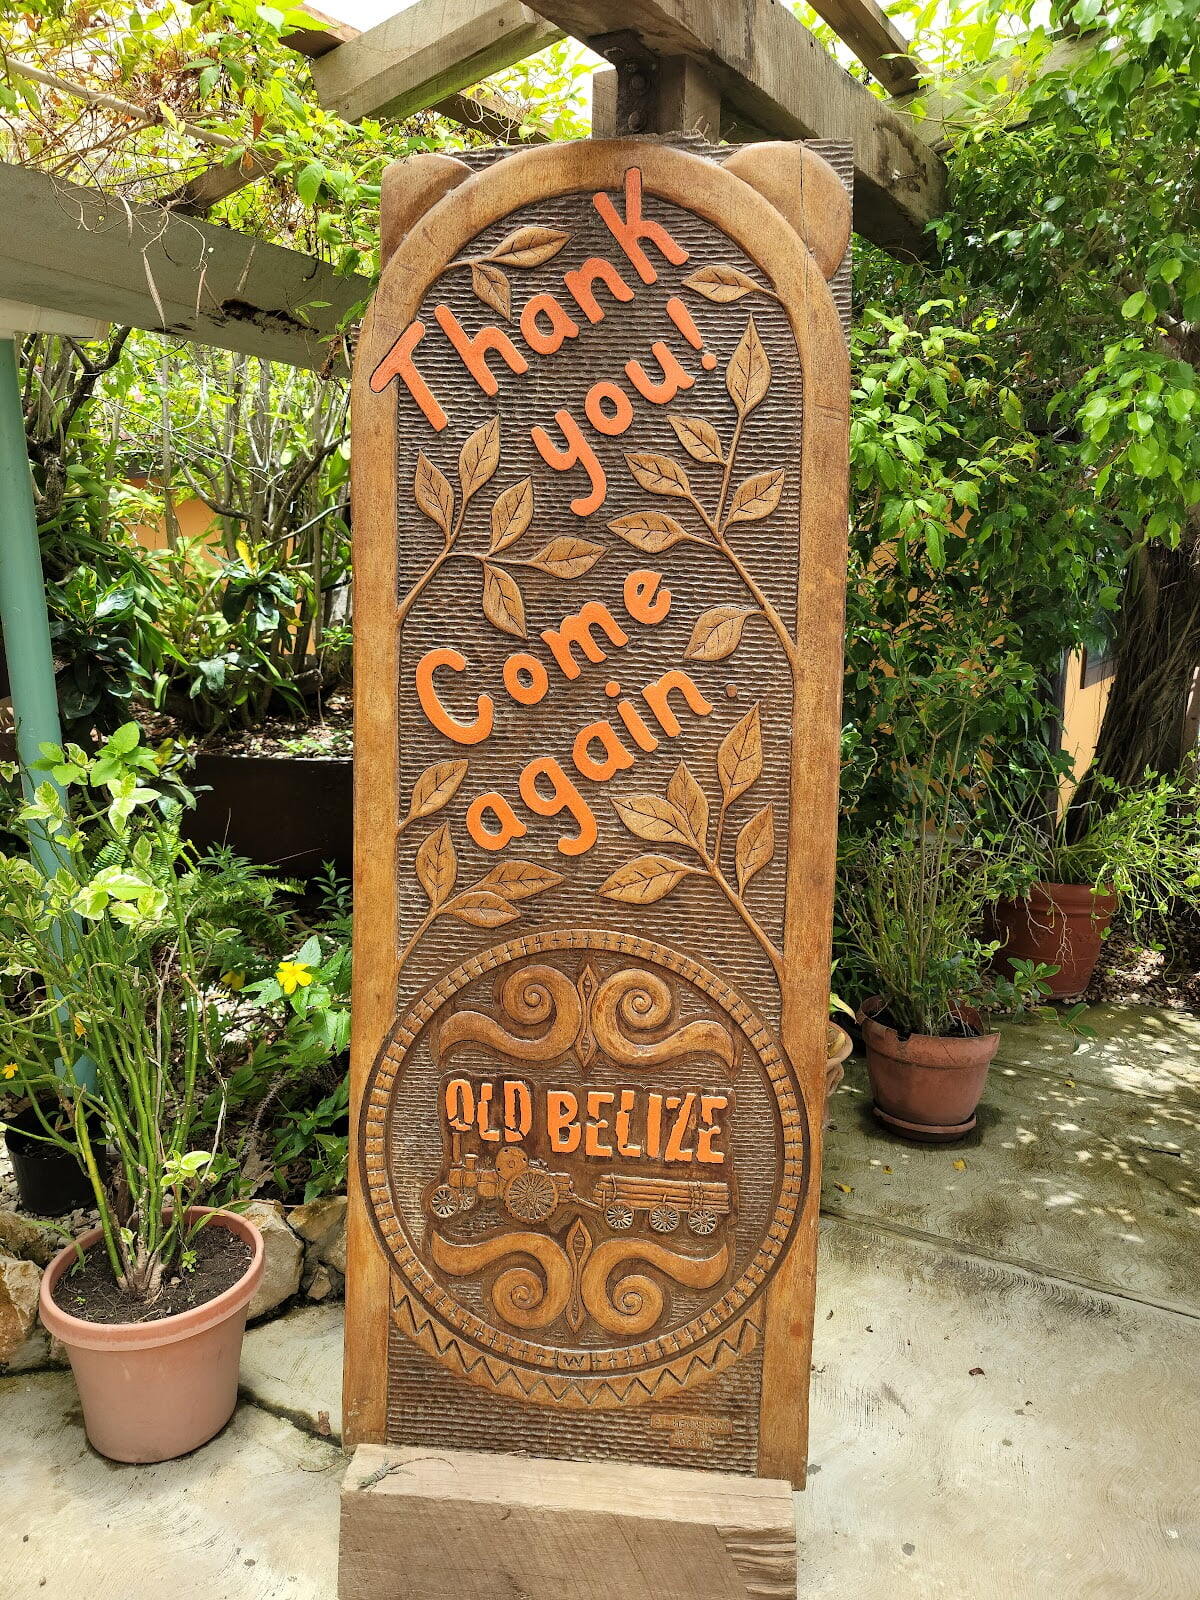 Old Belize